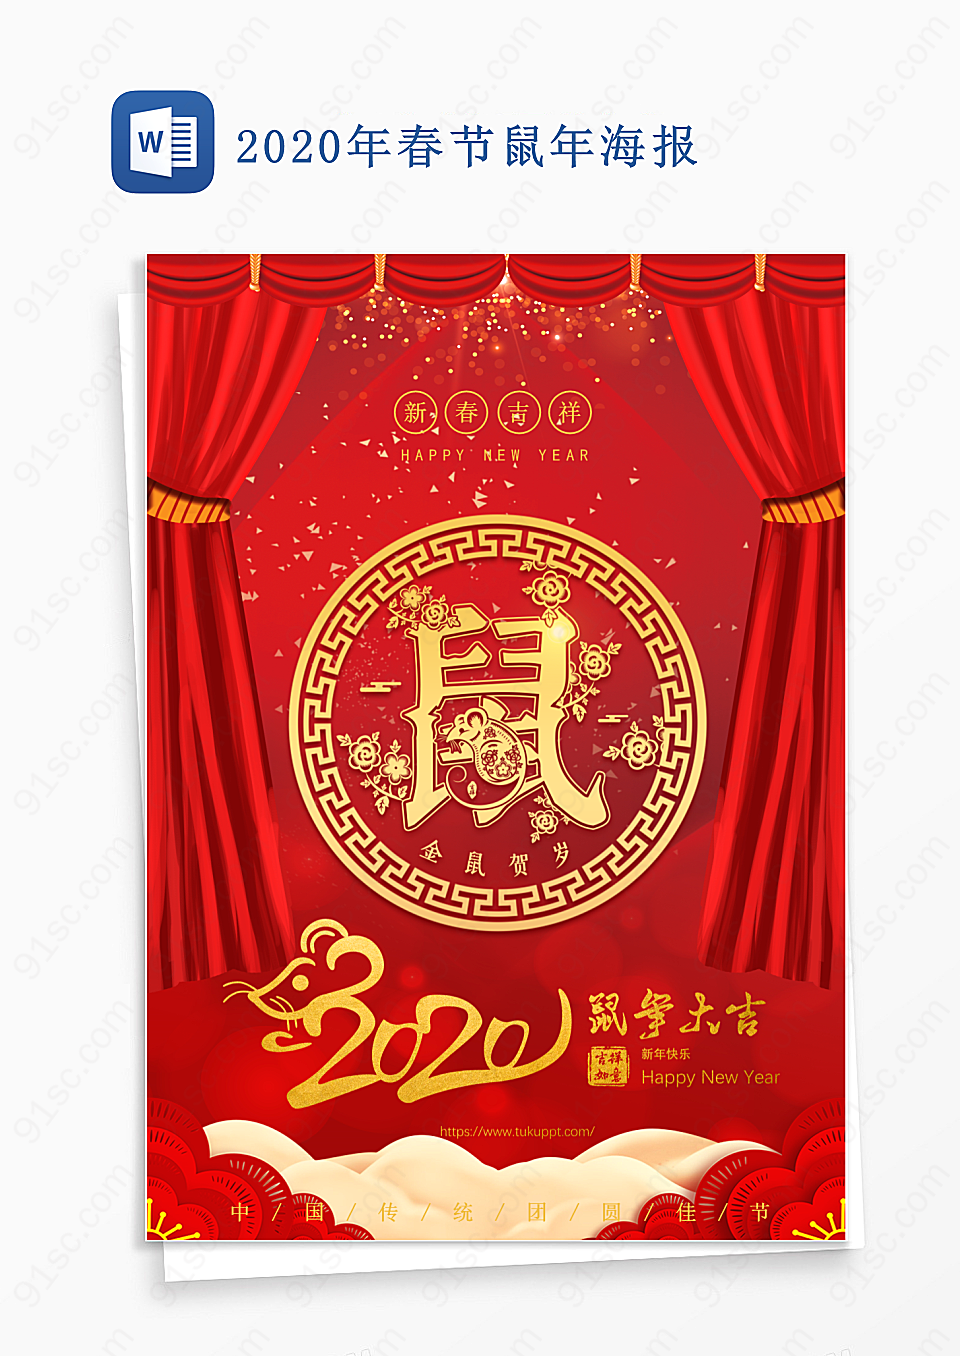 中国传统的鼠年大吉新春佳节海报